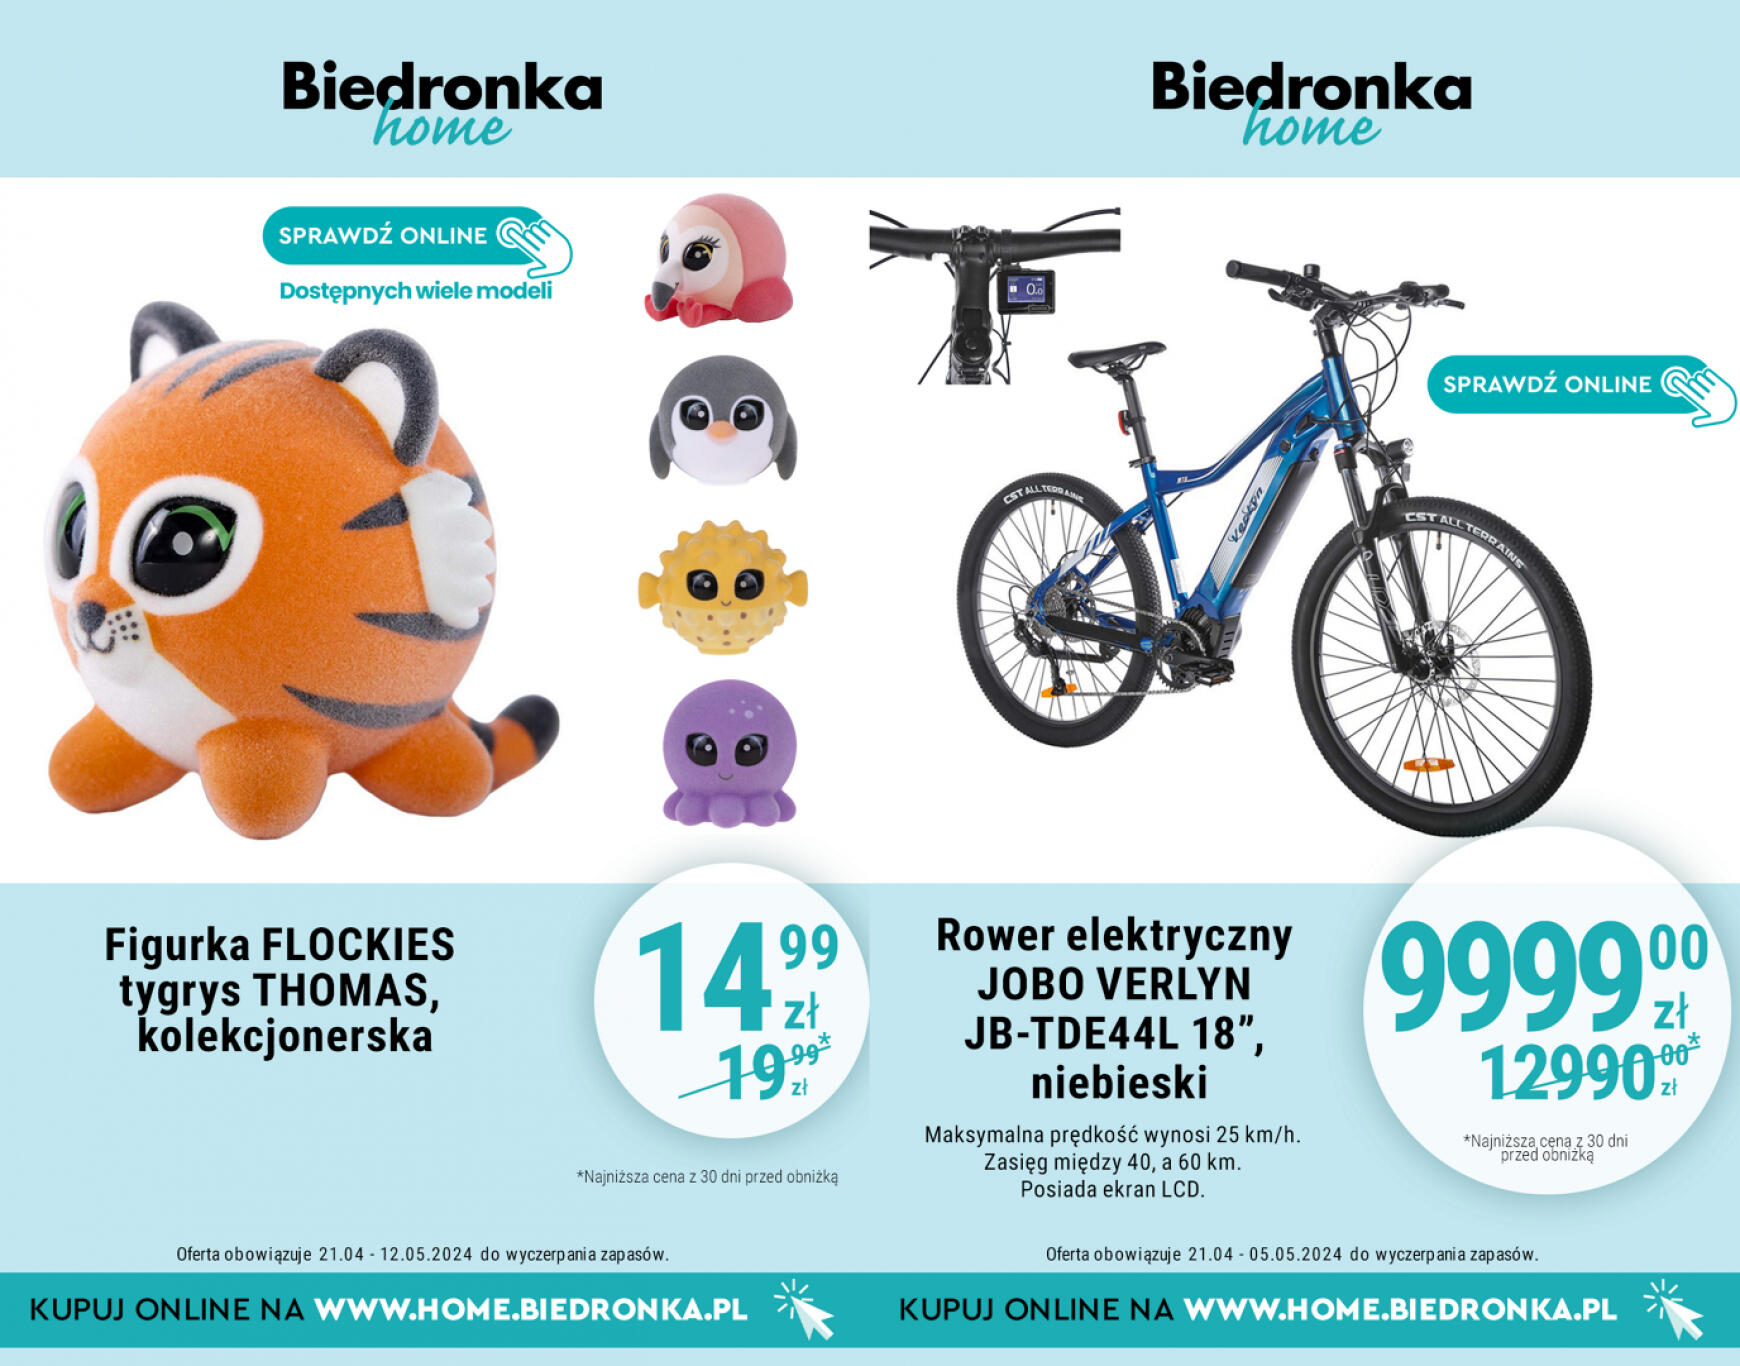 biedronka - Biedronka Home gazetka aktualna ważna od 21.04. - 05.05. - page: 5